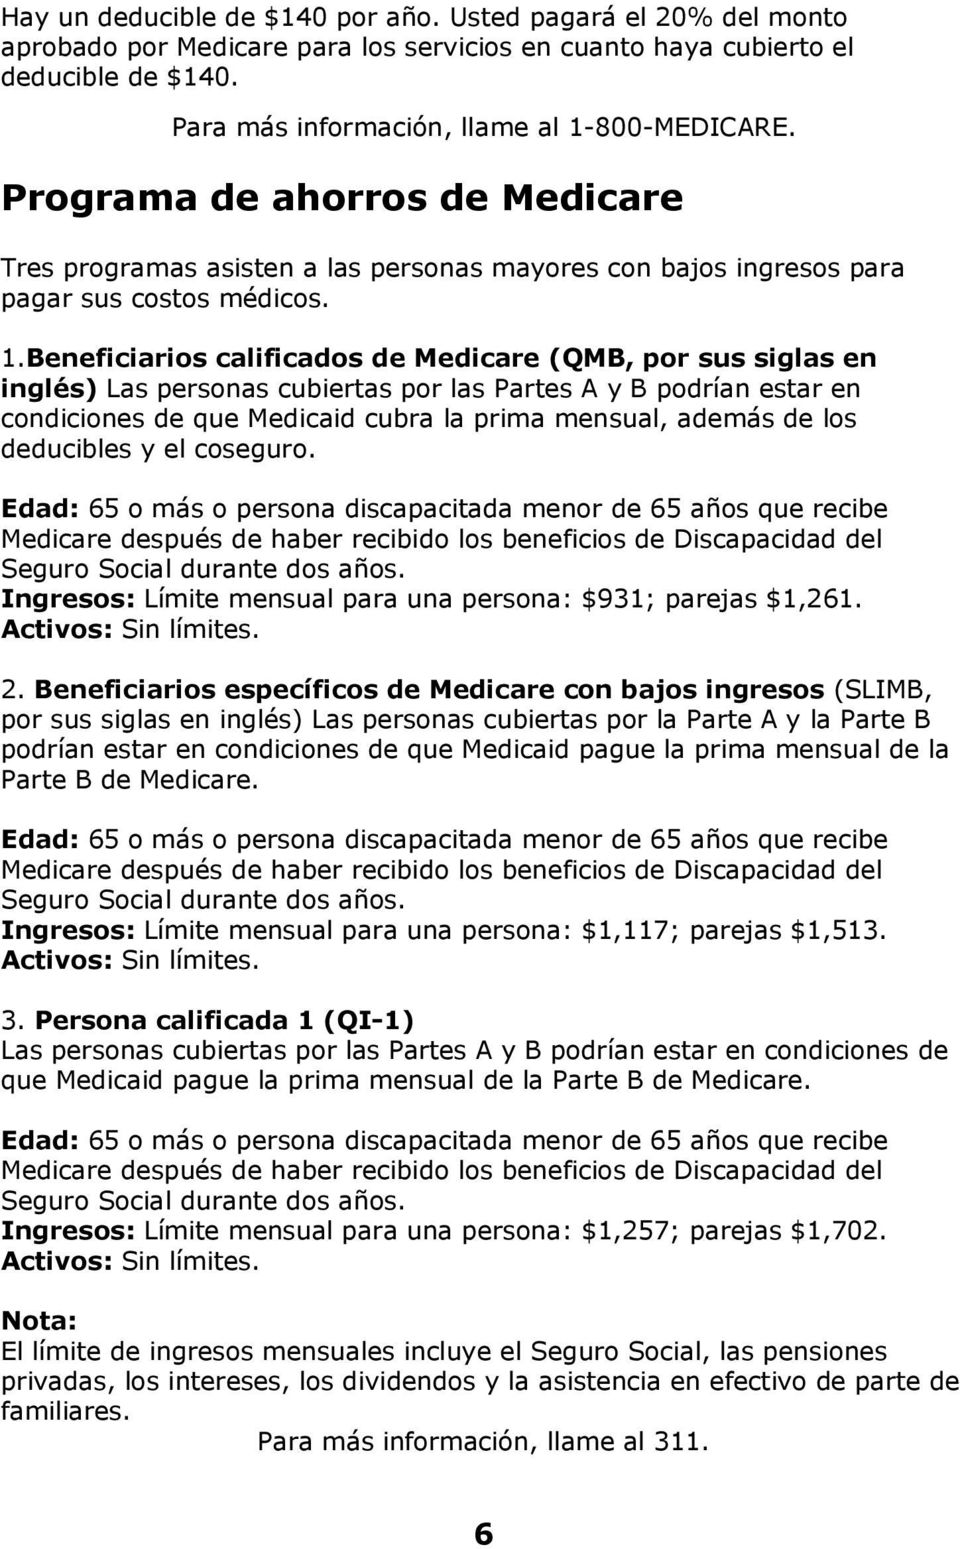 Beneficiarios calificados de Medicare (QMB, por sus siglas en inglés) Las personas cubiertas por las Partes A y B podrían estar en condiciones de que Medicaid cubra la prima mensual, además de los